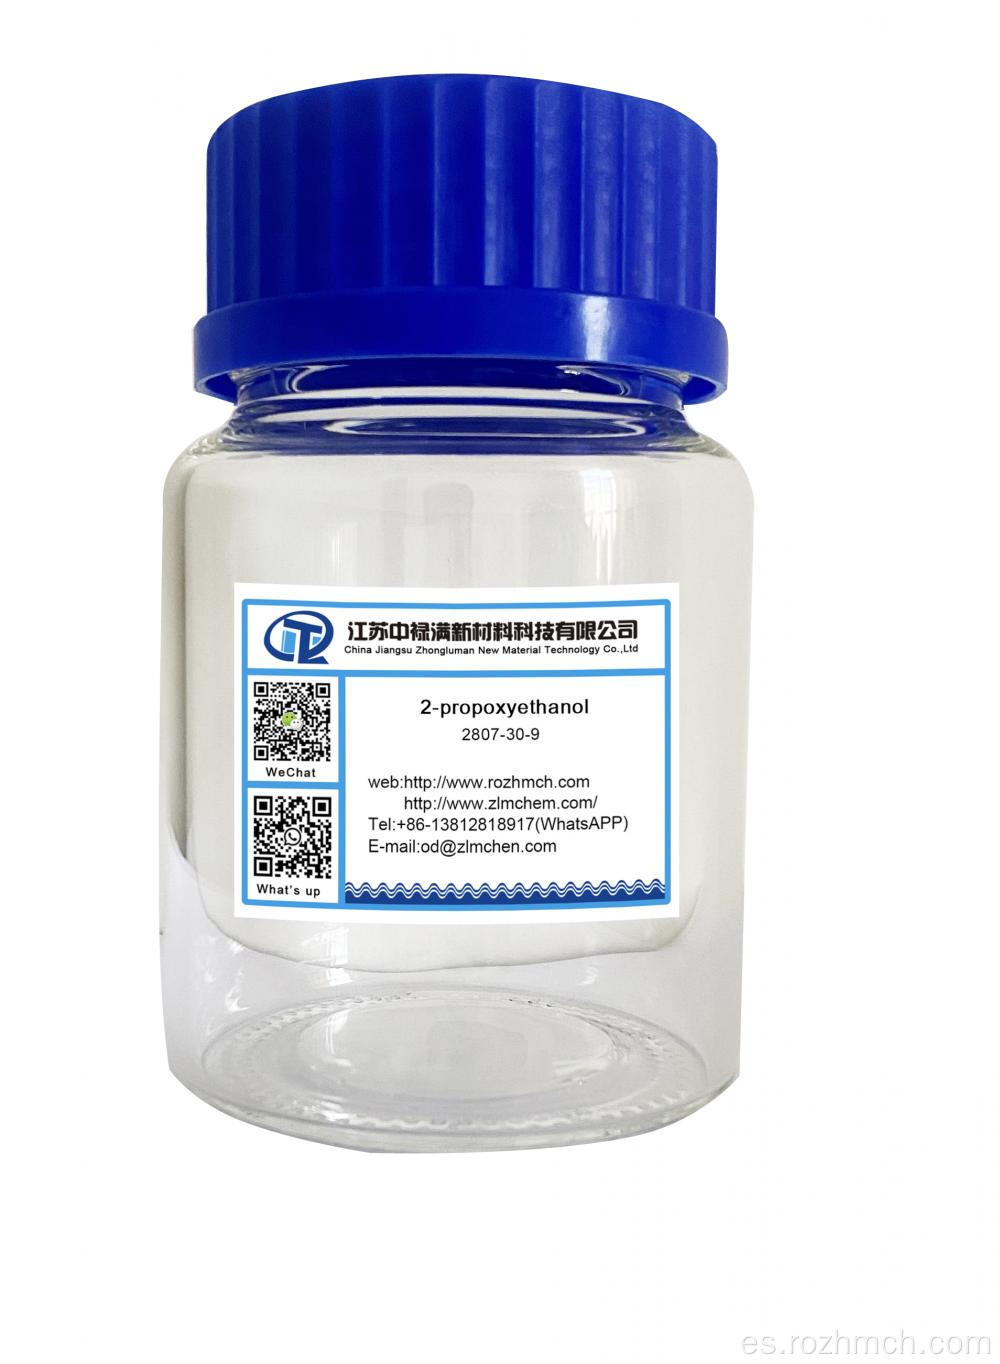 2-propoxietanol CAS 2807-30-9 líquido